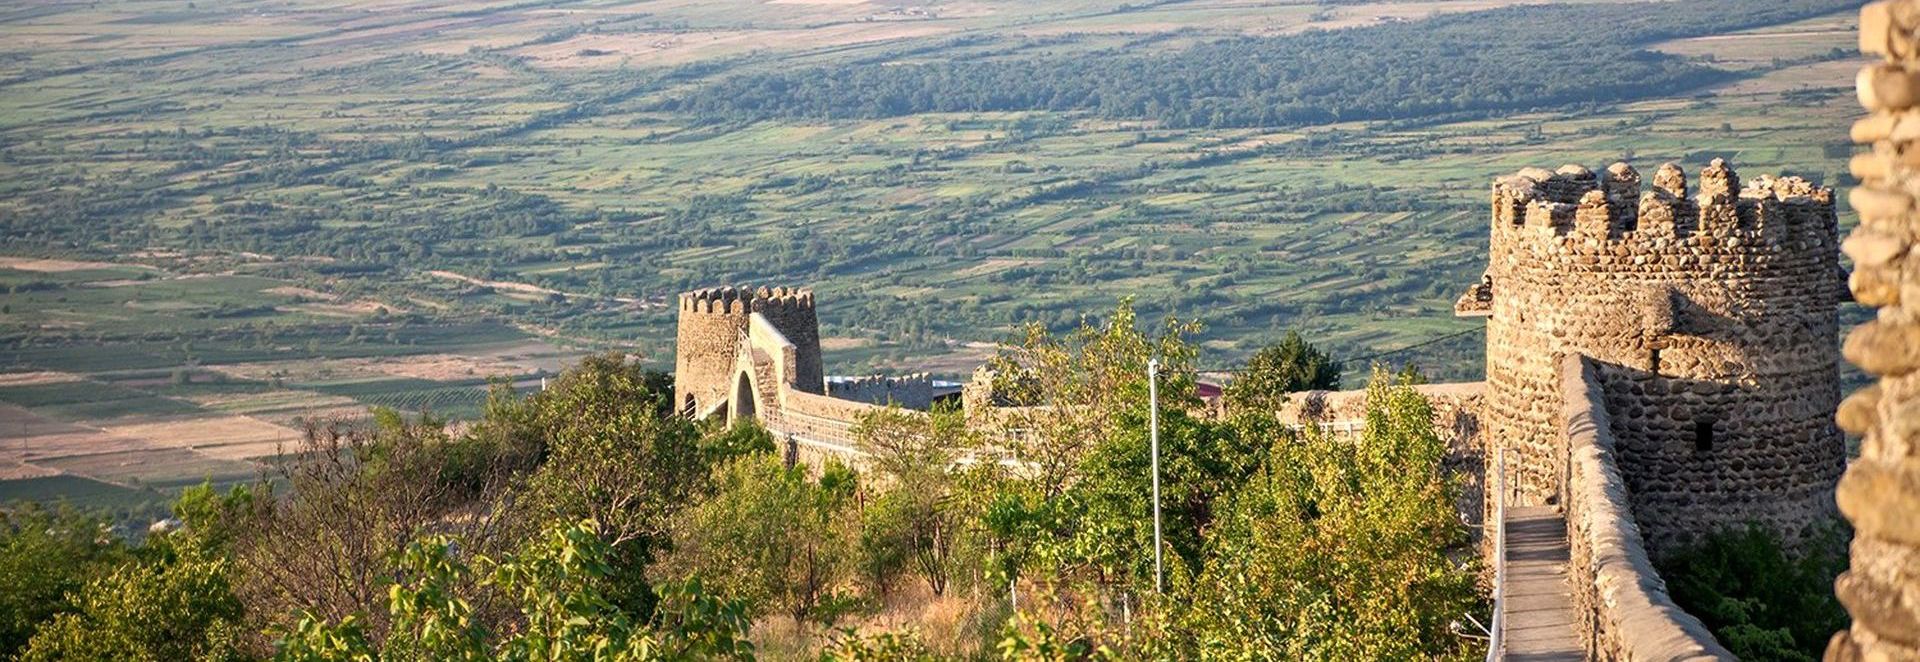 Доступная для прогулок часть стены крепости Сигнахи и вид с неё на Алазанскую долину